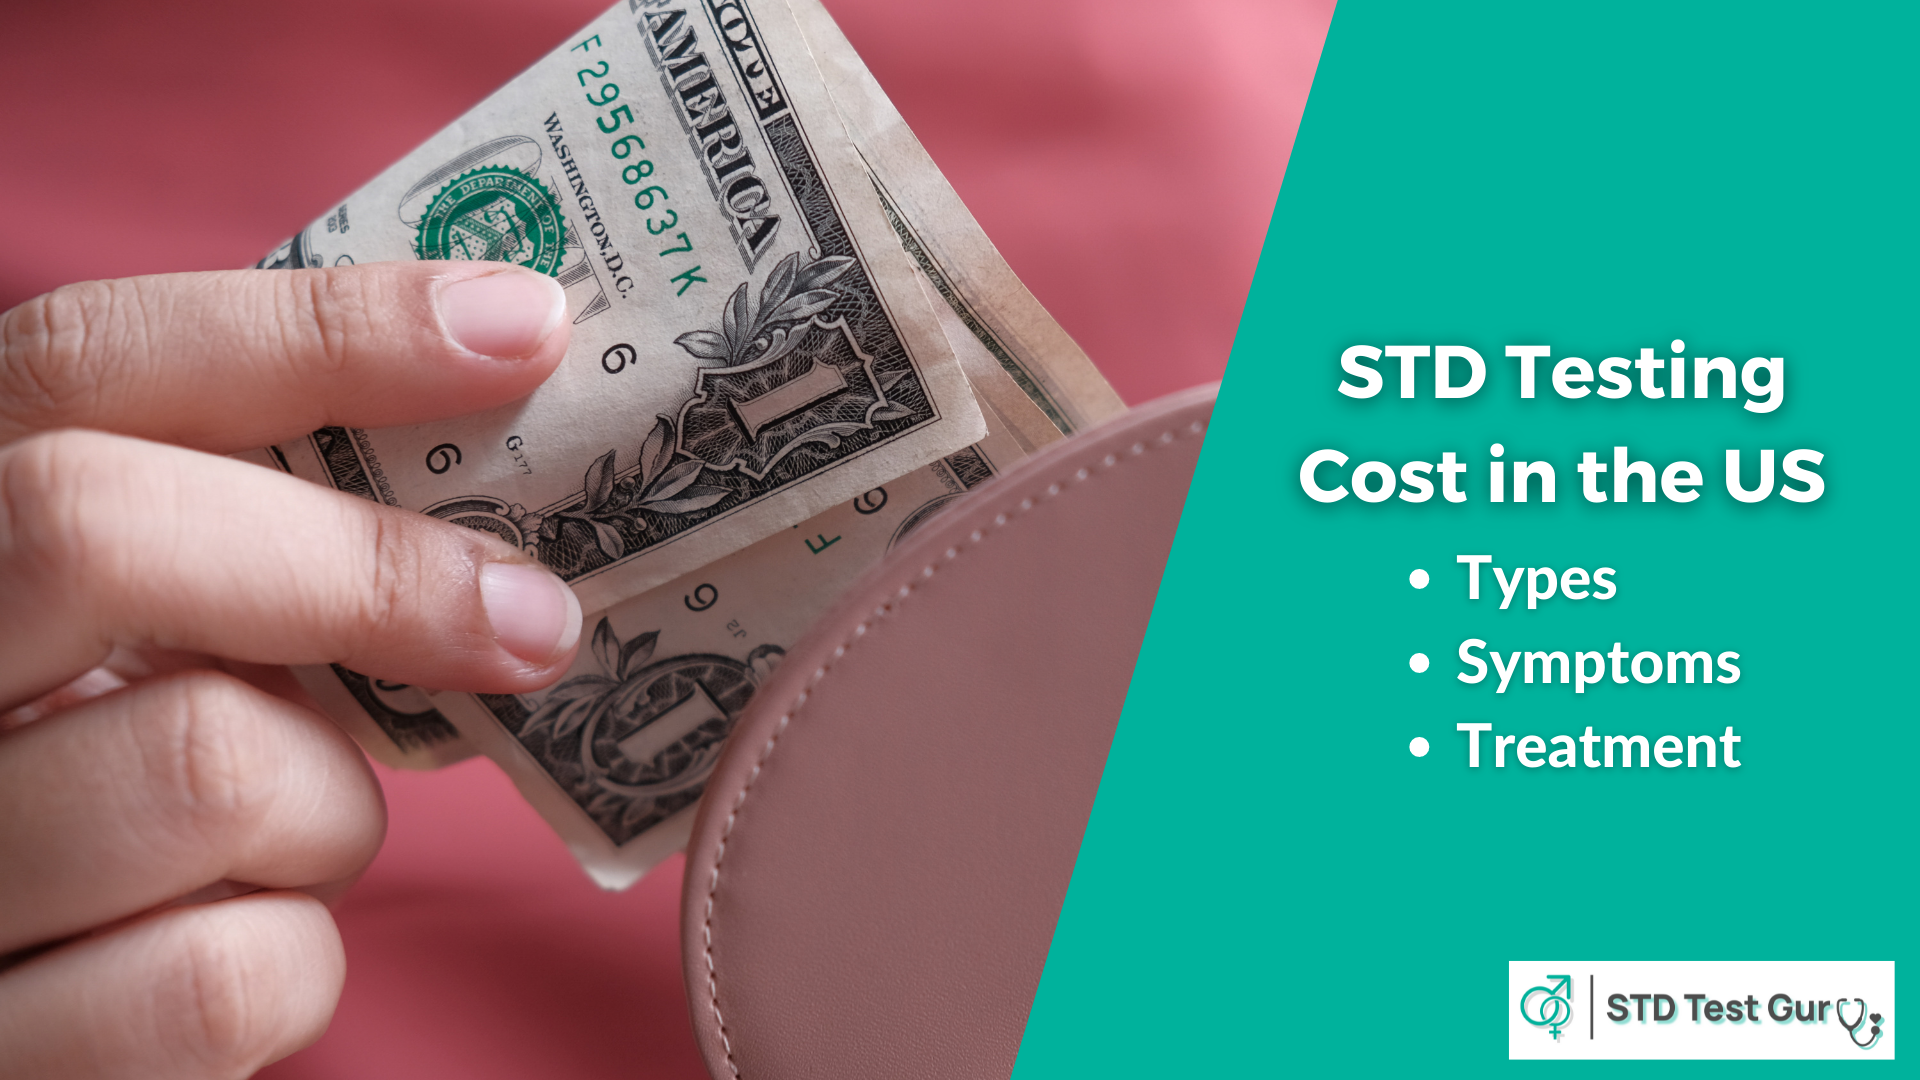 STD Testing Cost in the US - STDTestGuru